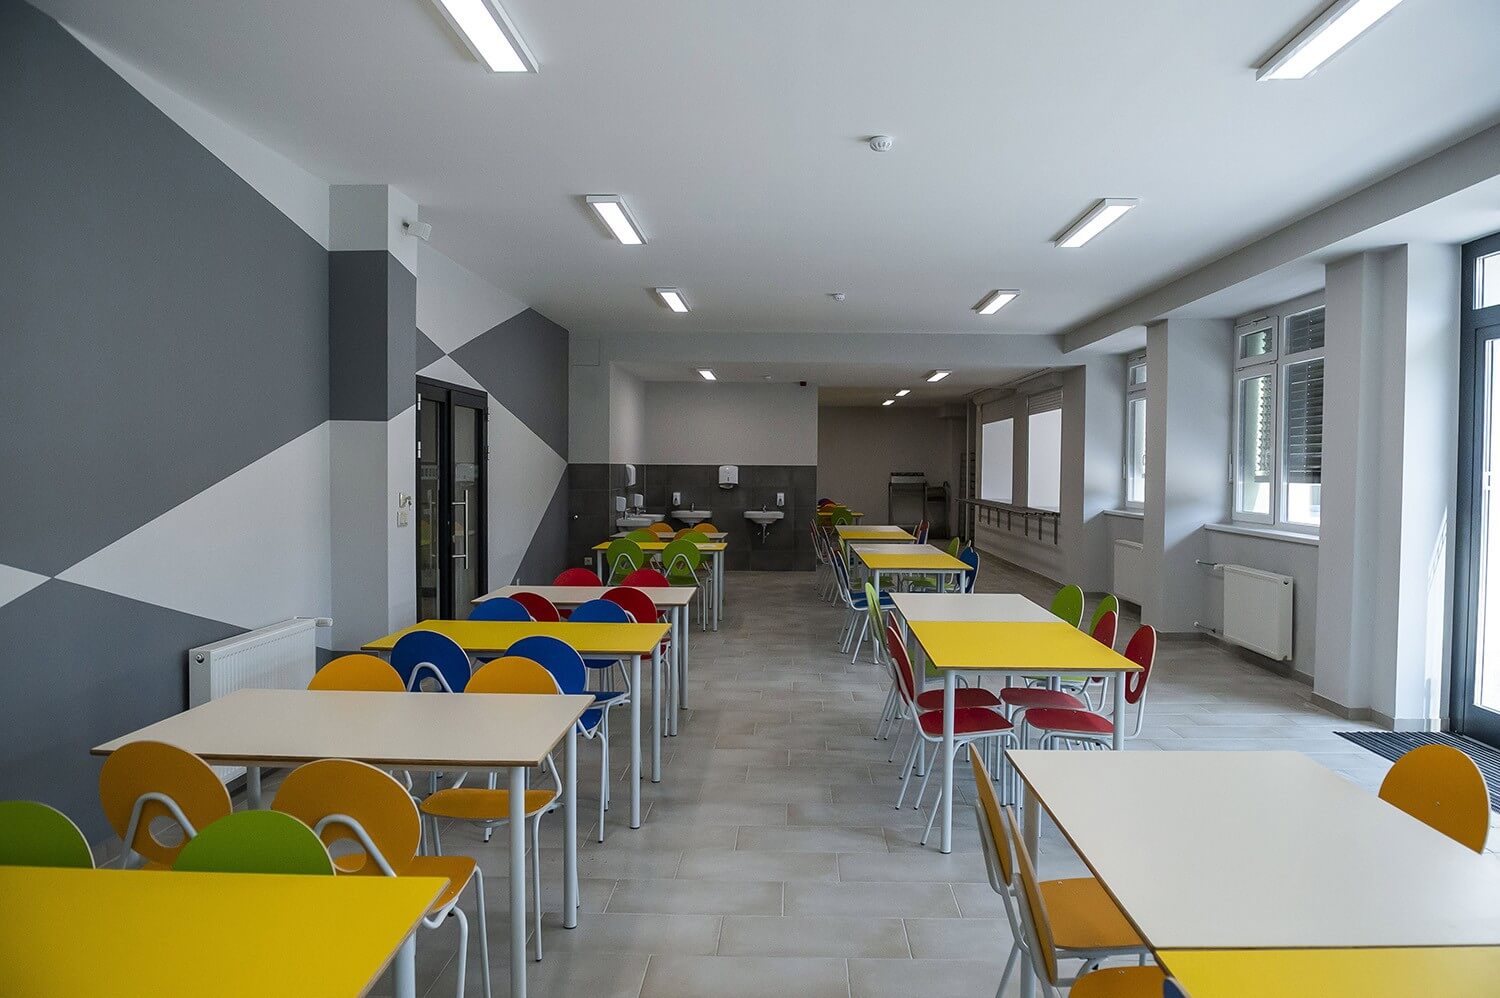 Modern új iskolával oldotta meg a tanteremhiányt Kiskunfélegyháza